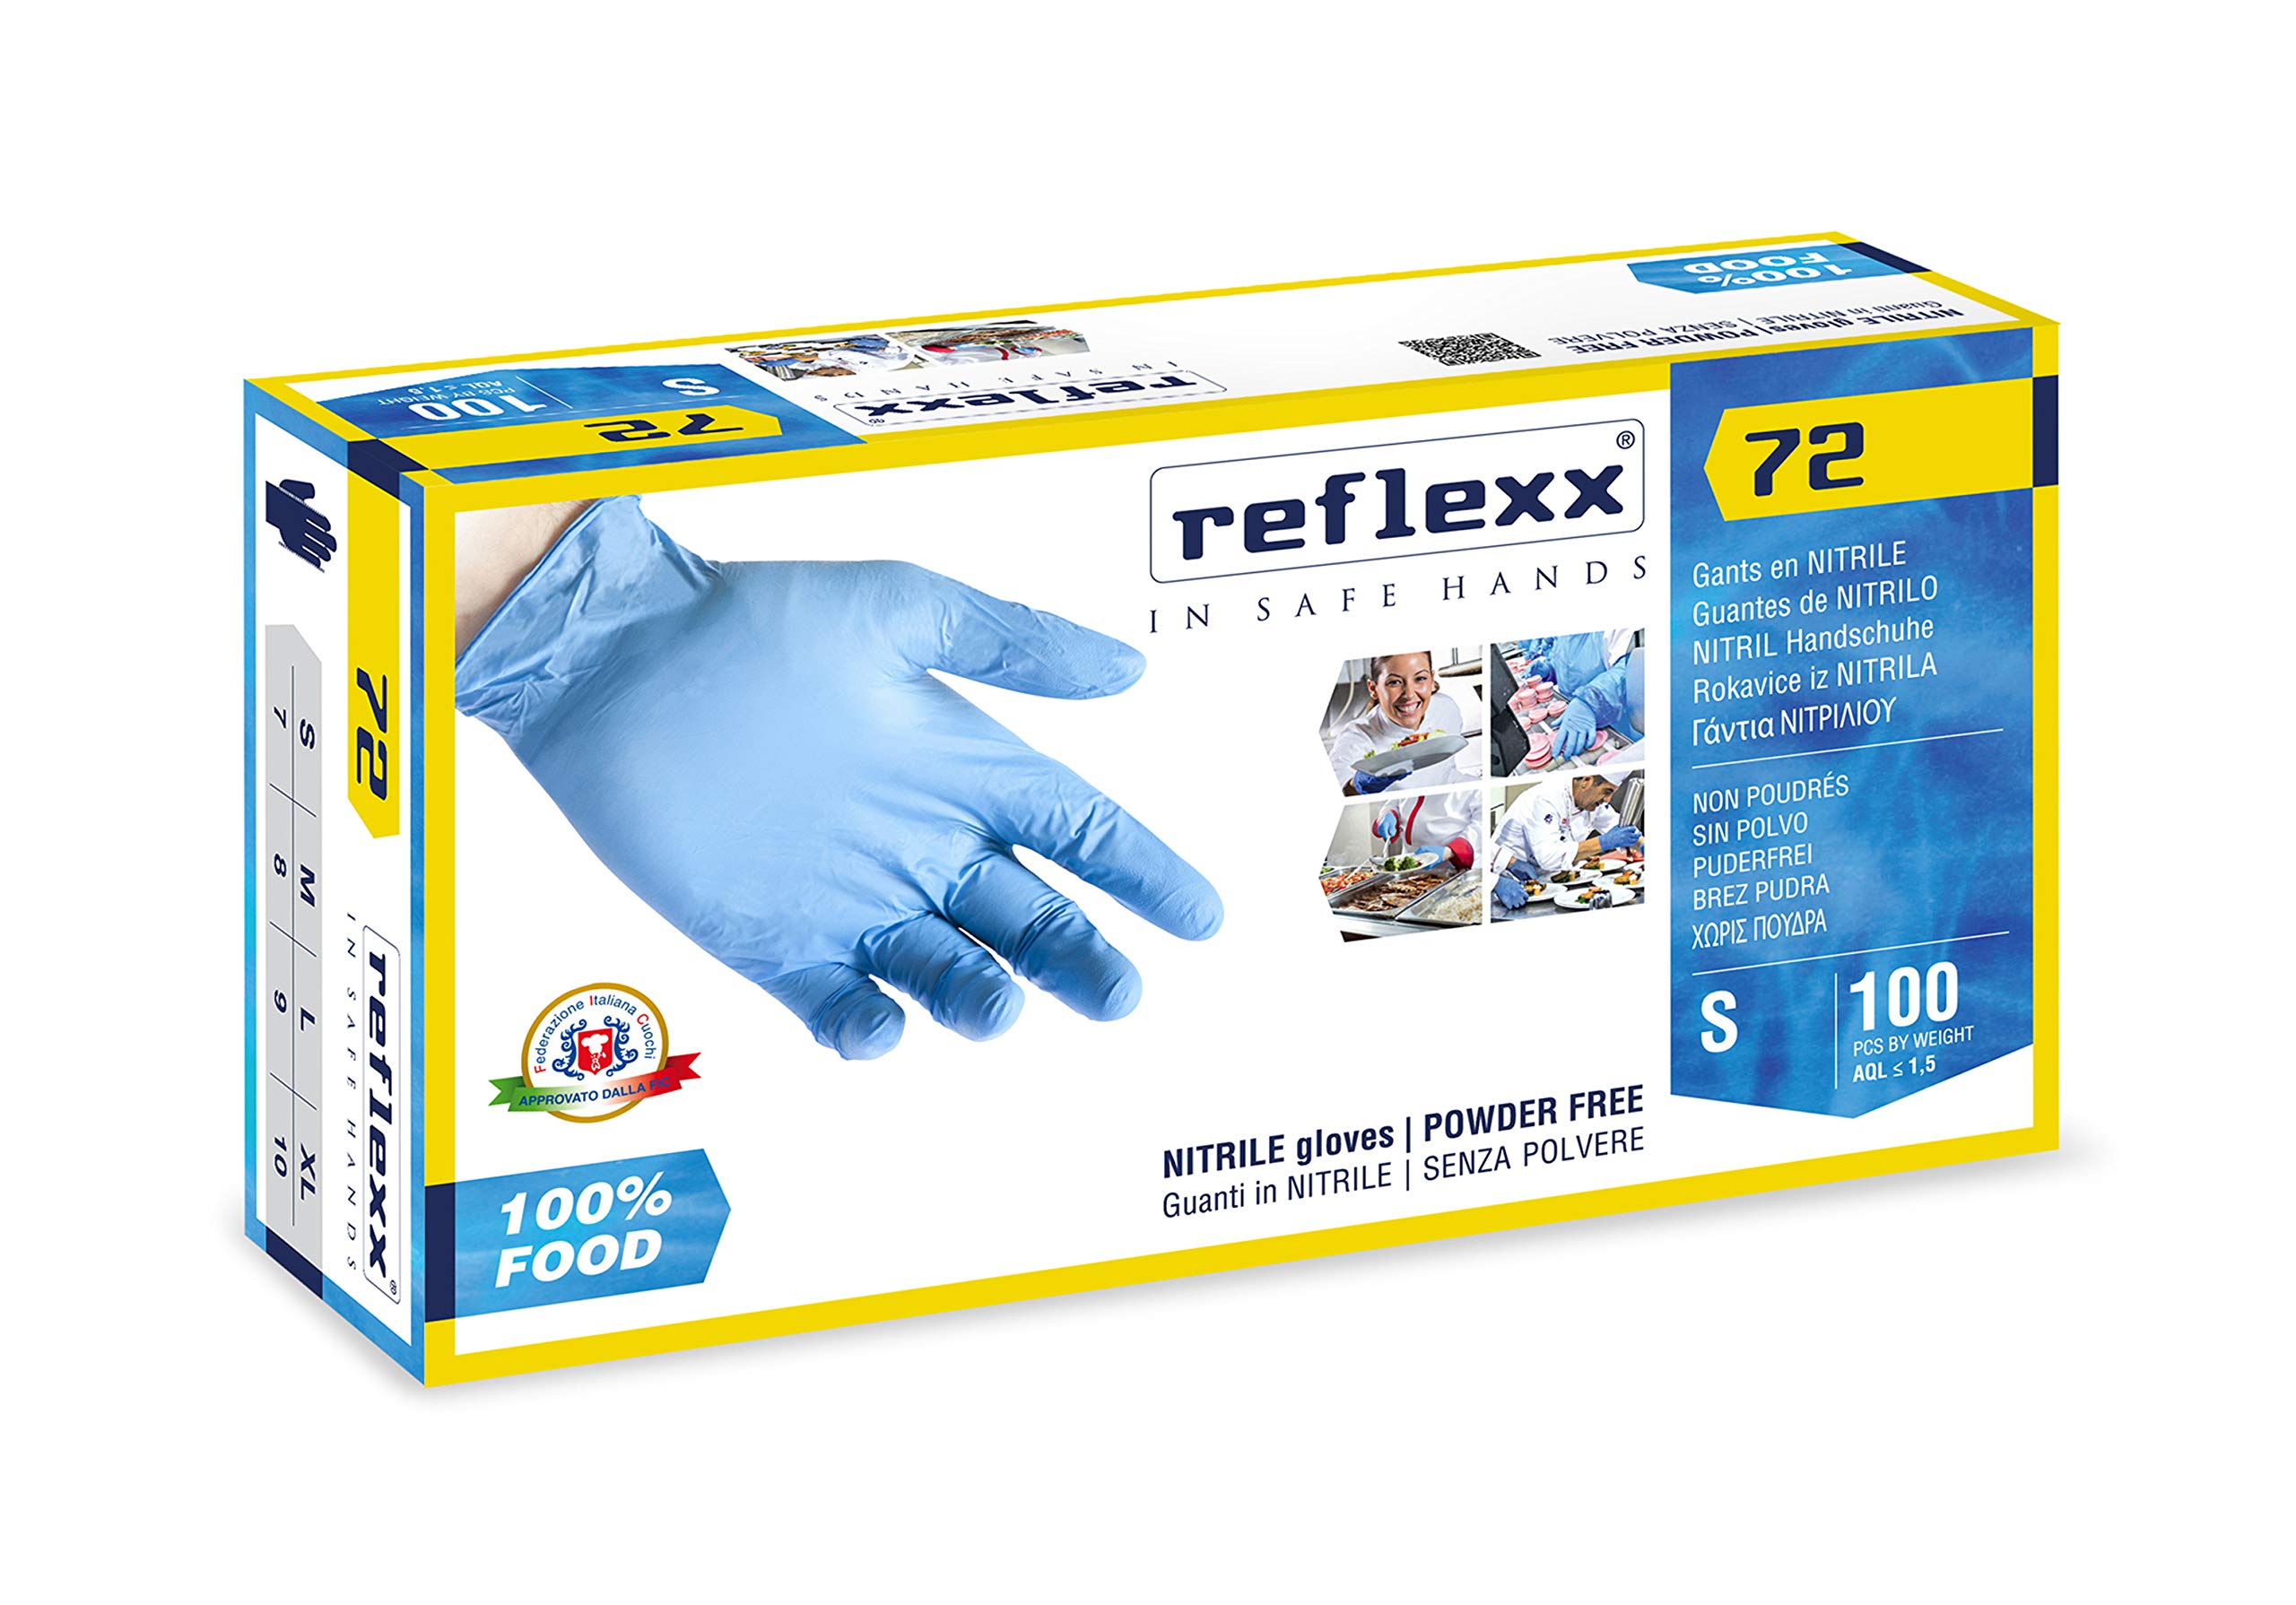 Guanti in nitrile foodline R72 - tg S - azzurro - Reflexx - conf. 100 pezzi